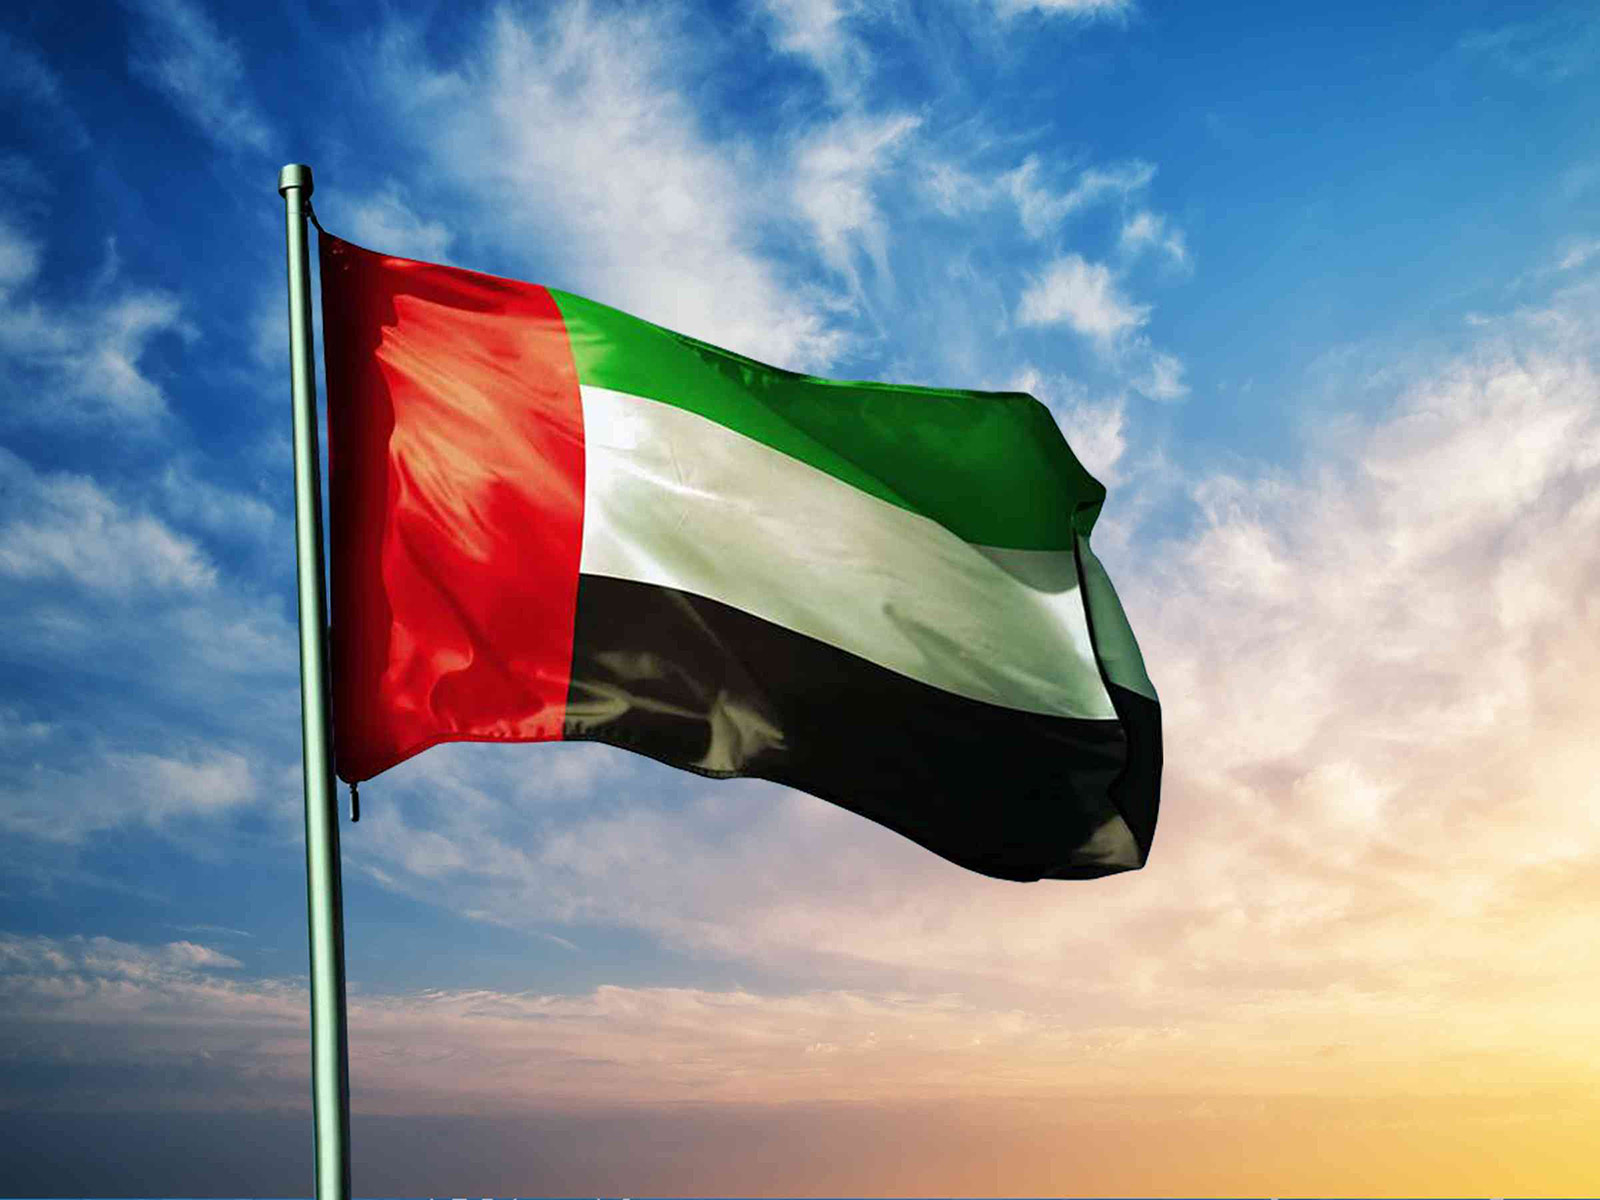 الإمارات تشارك في الاجتماعات التحضيرية للمجلس الاقتصادي والاجتماعي العربي